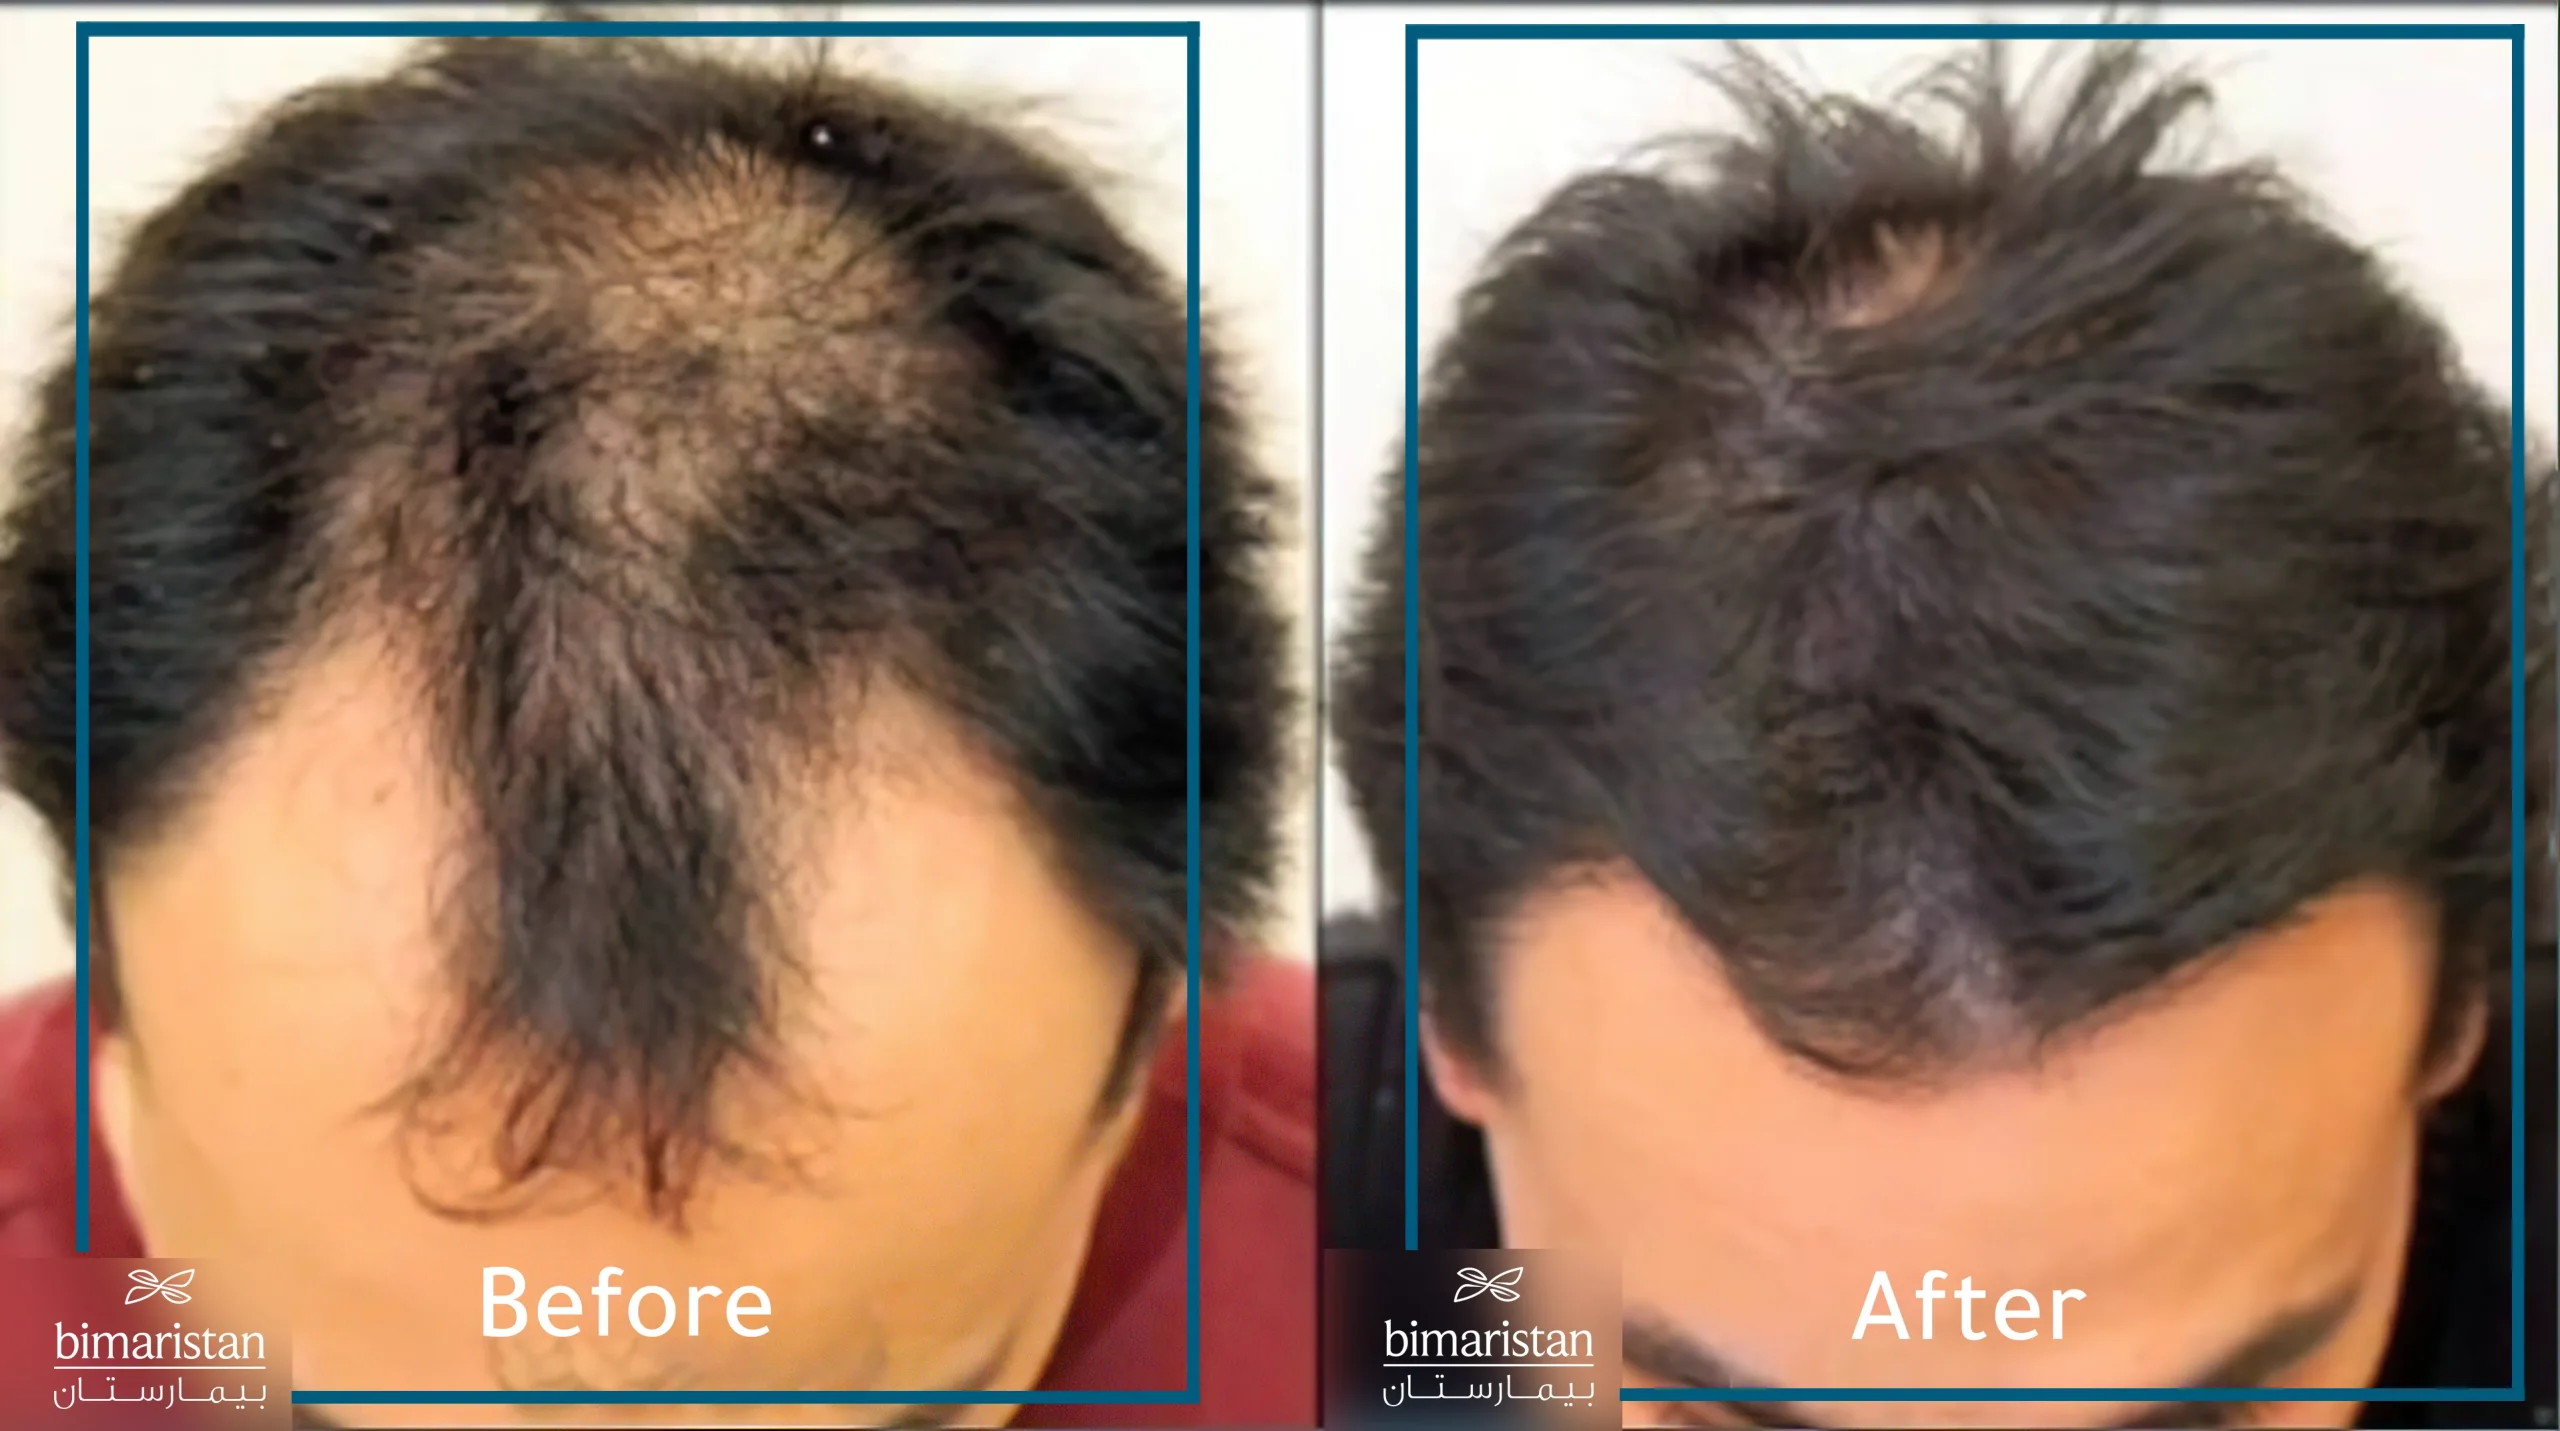 صورة لمريض مصاب بالصلع قبل وبعد إحراء عملية زراعة الشعر بطريقة نيوجرافت